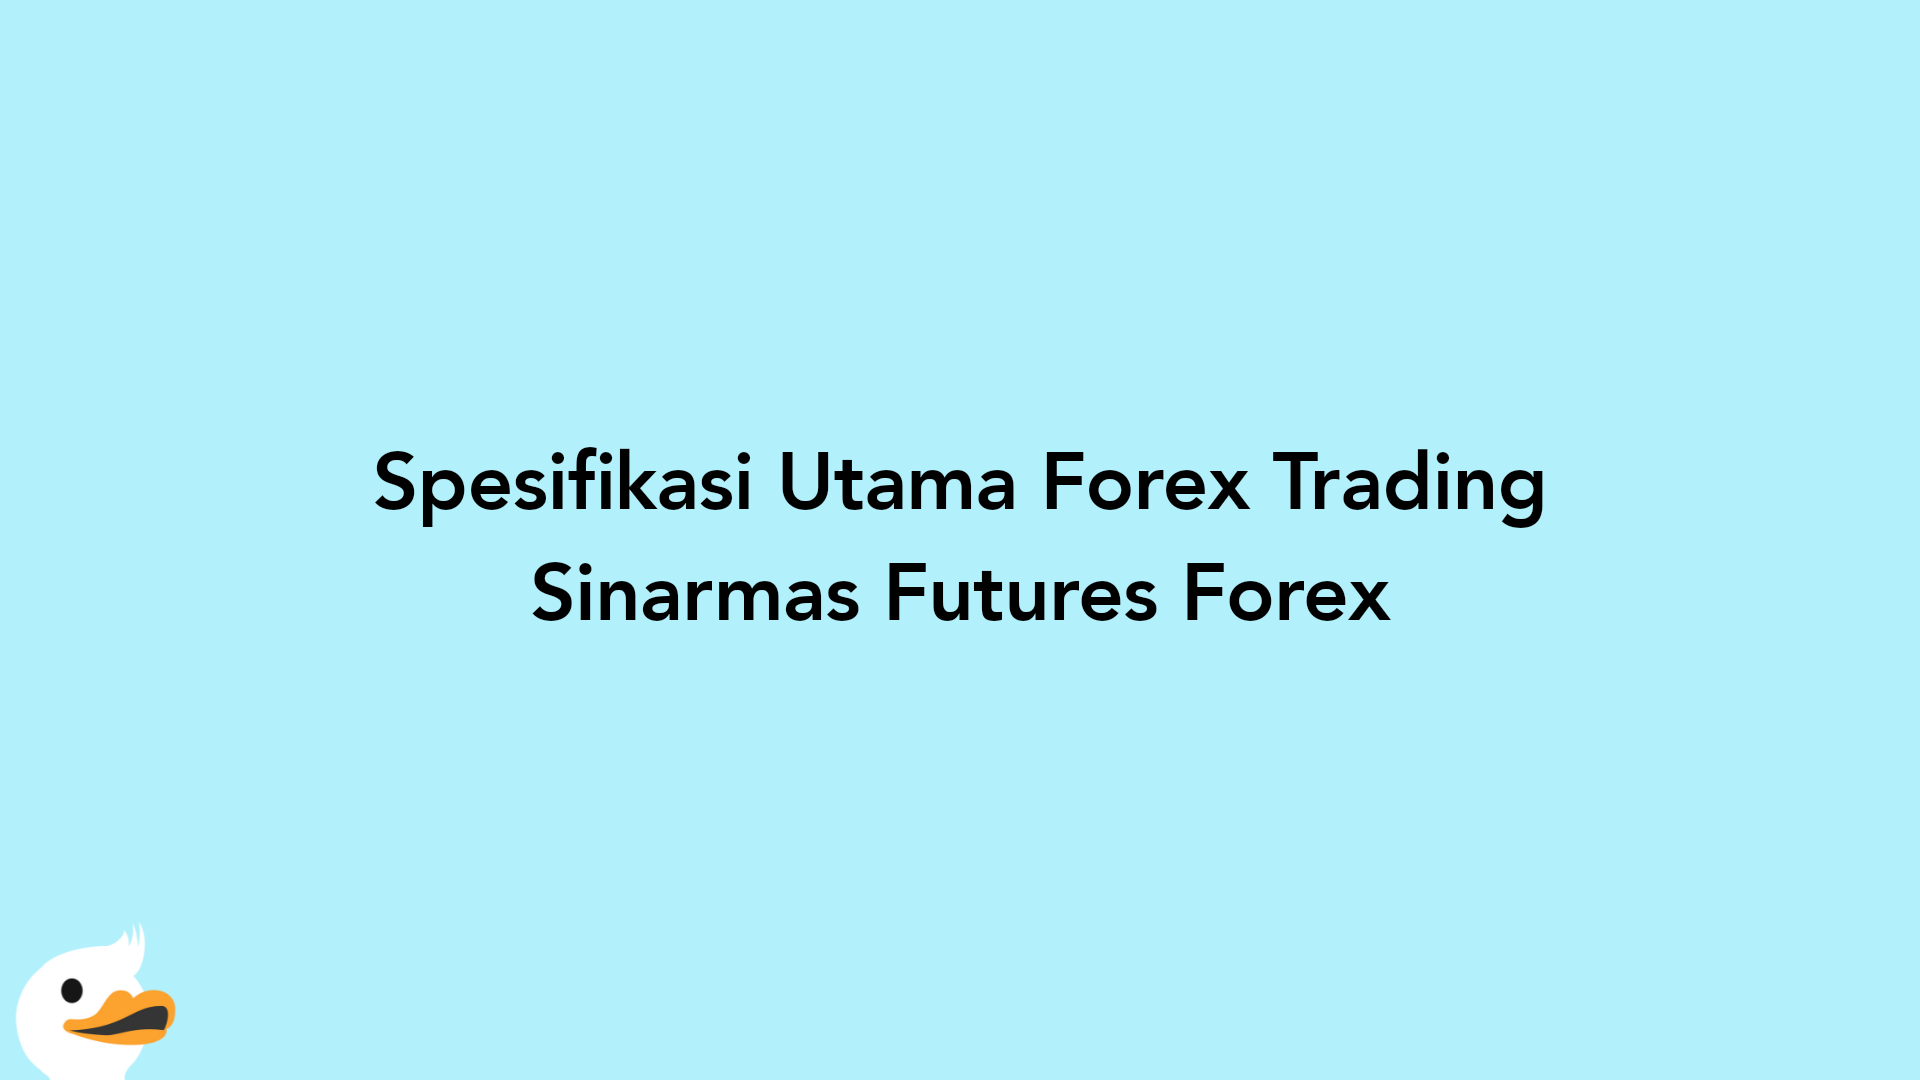 Spesifikasi Utama Forex Trading Sinarmas Futures Forex